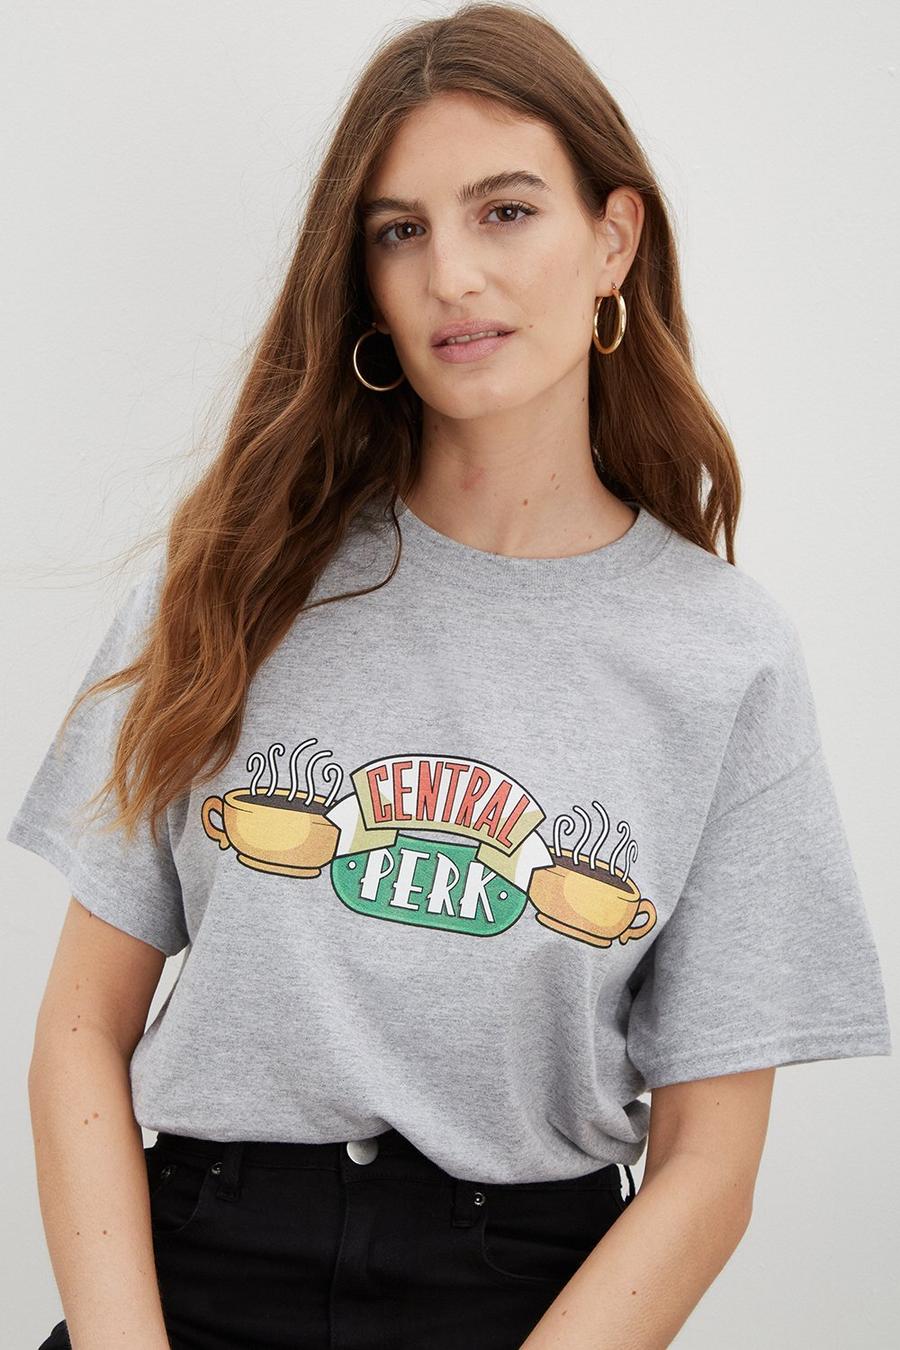 Central Perk Oversized T-shirt